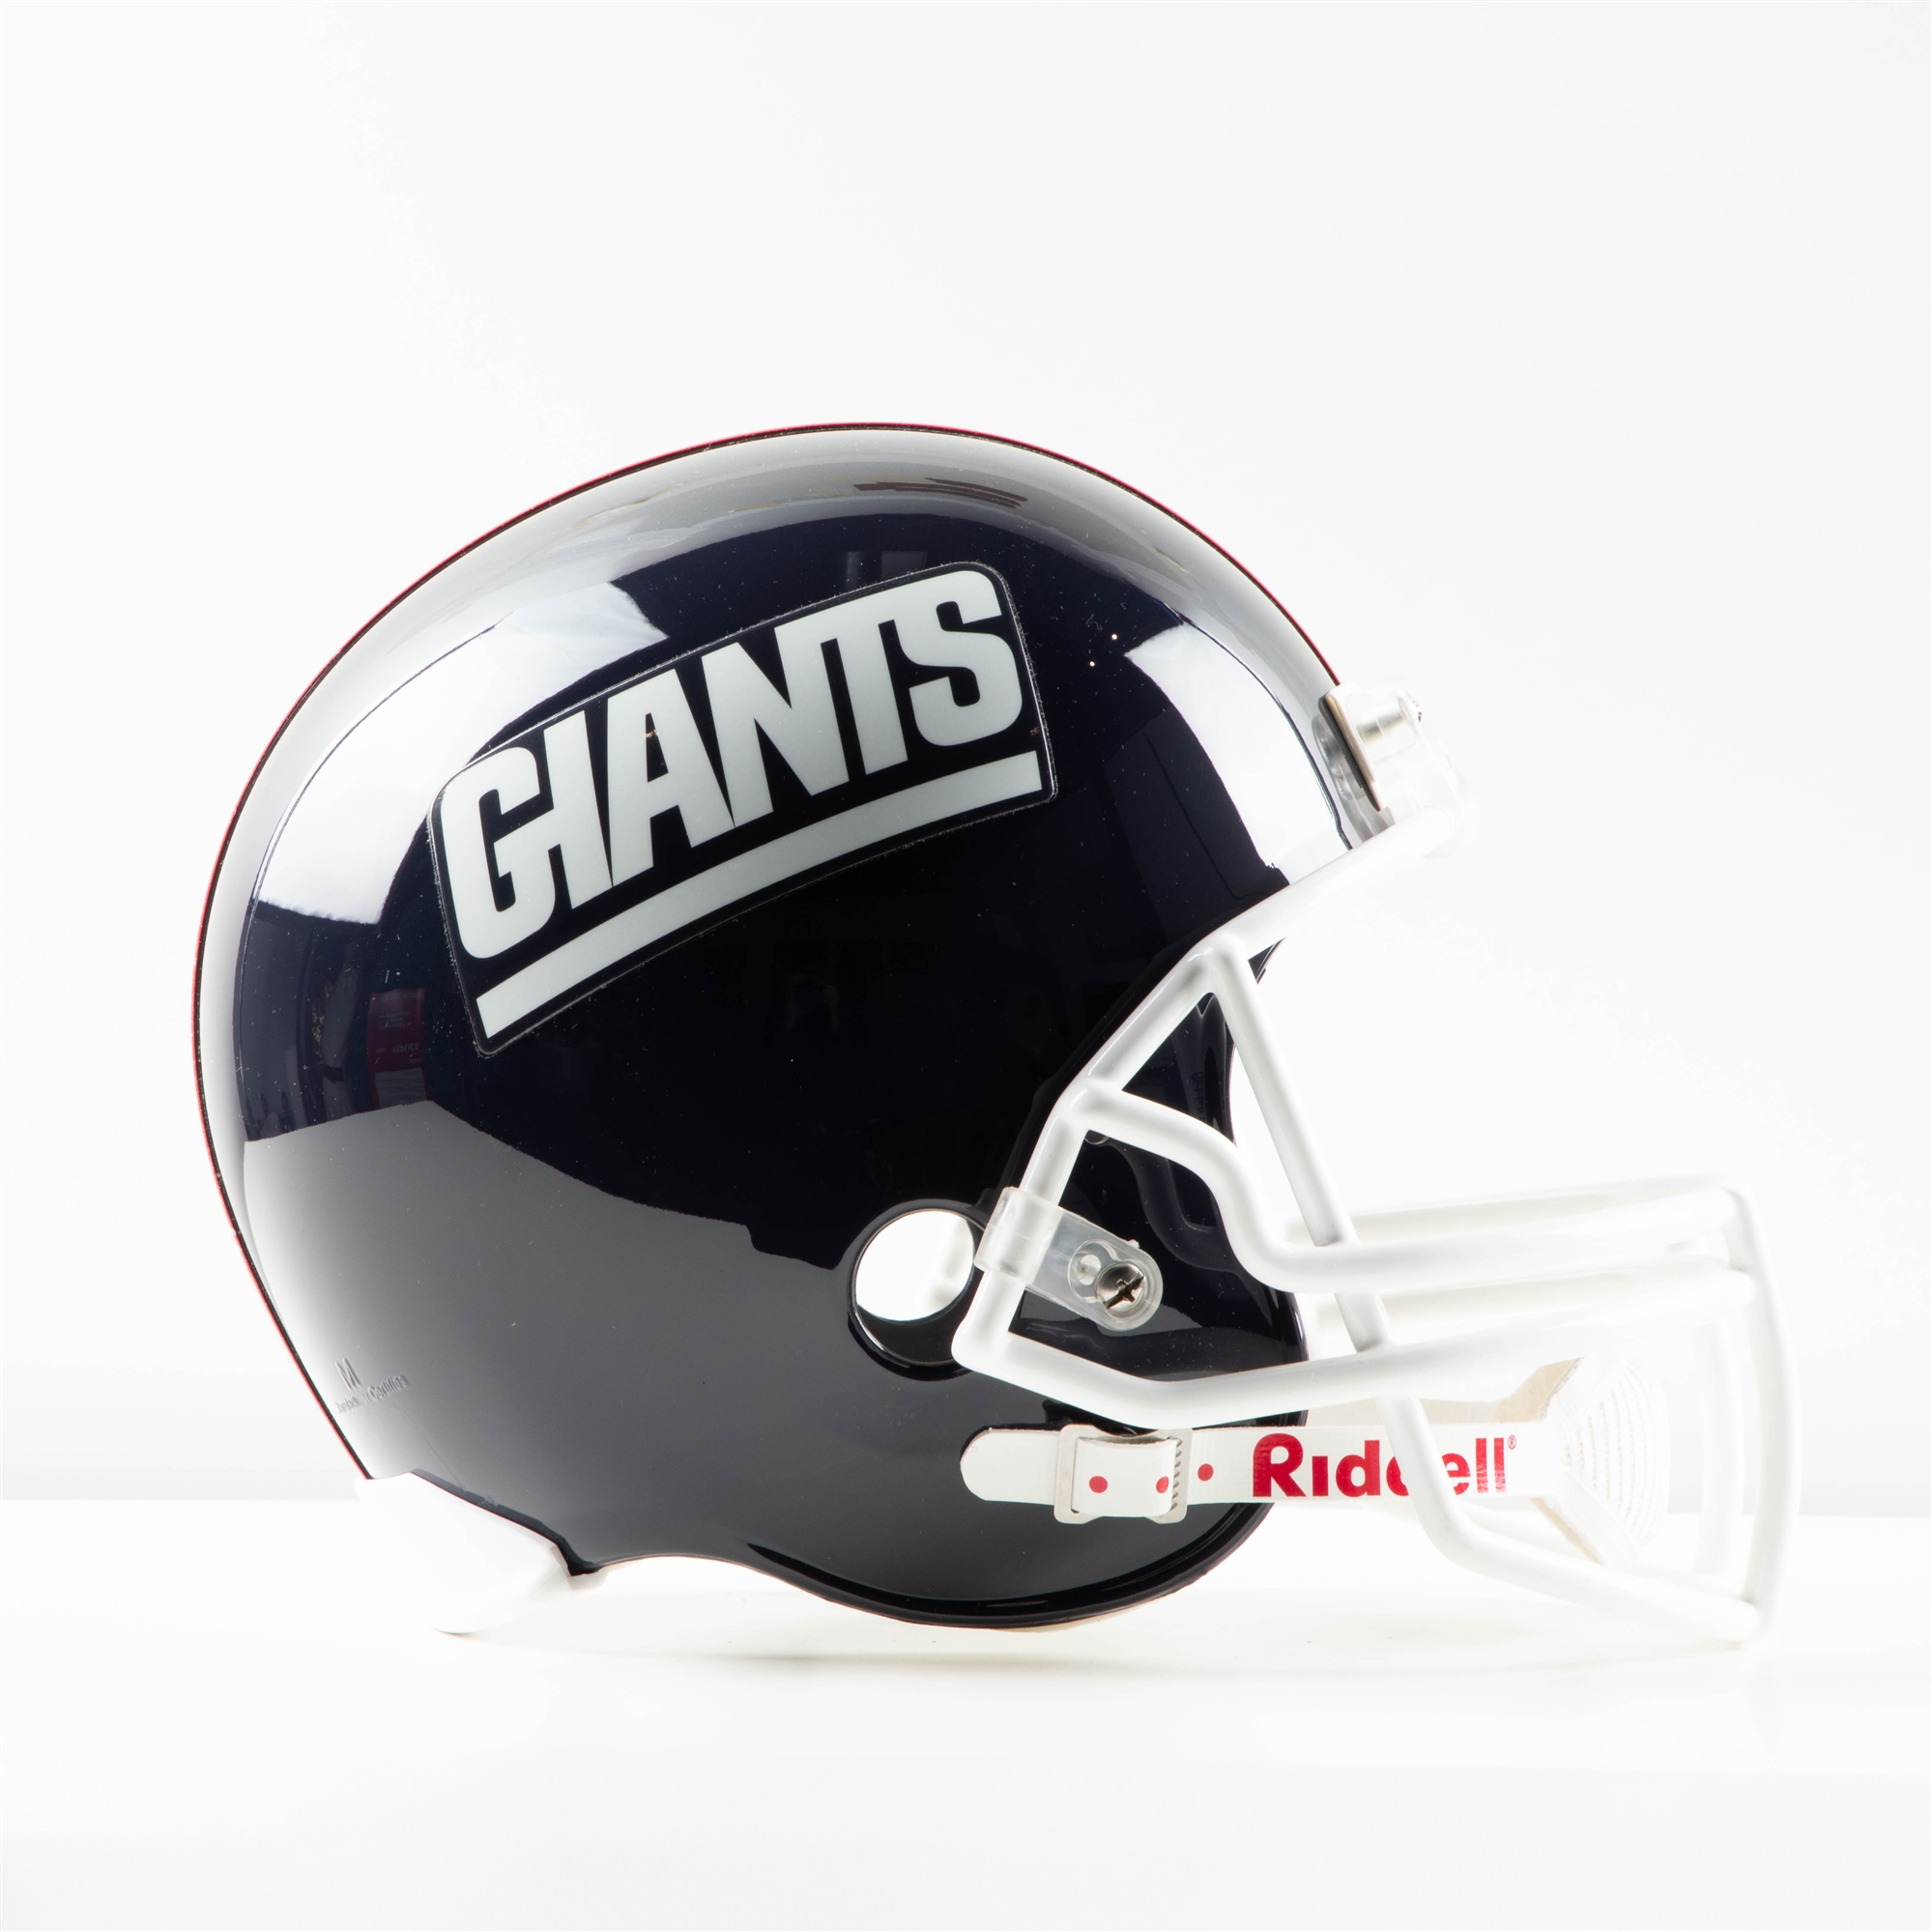 New York Giants Riddell Full Size NFL Replica Helmet